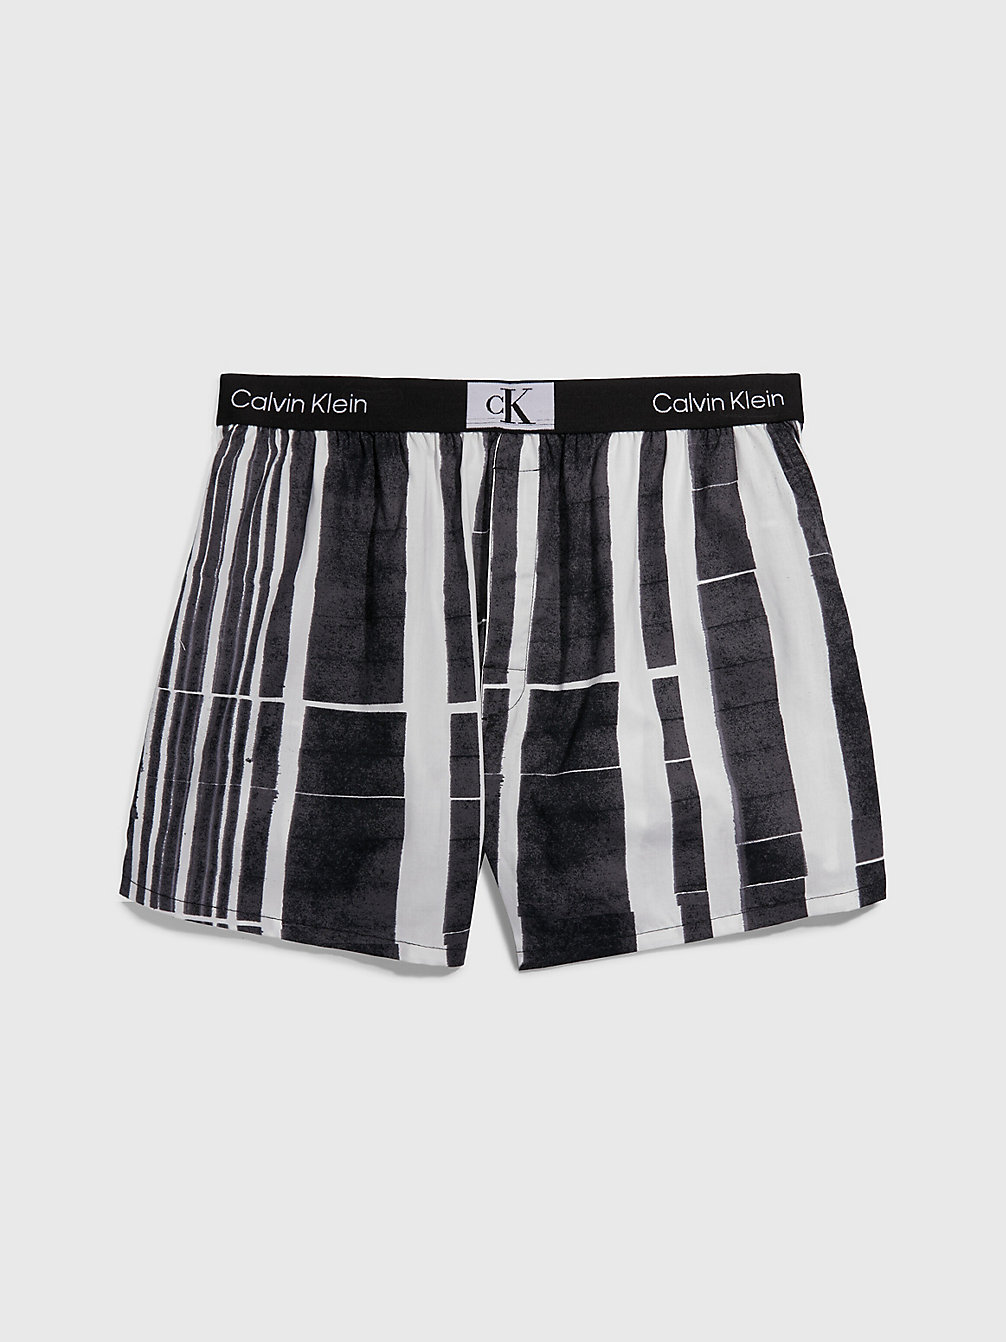 BROKEN STRIPE_BLACK Boxershorts - Ck96 undefined Herren Calvin Klein